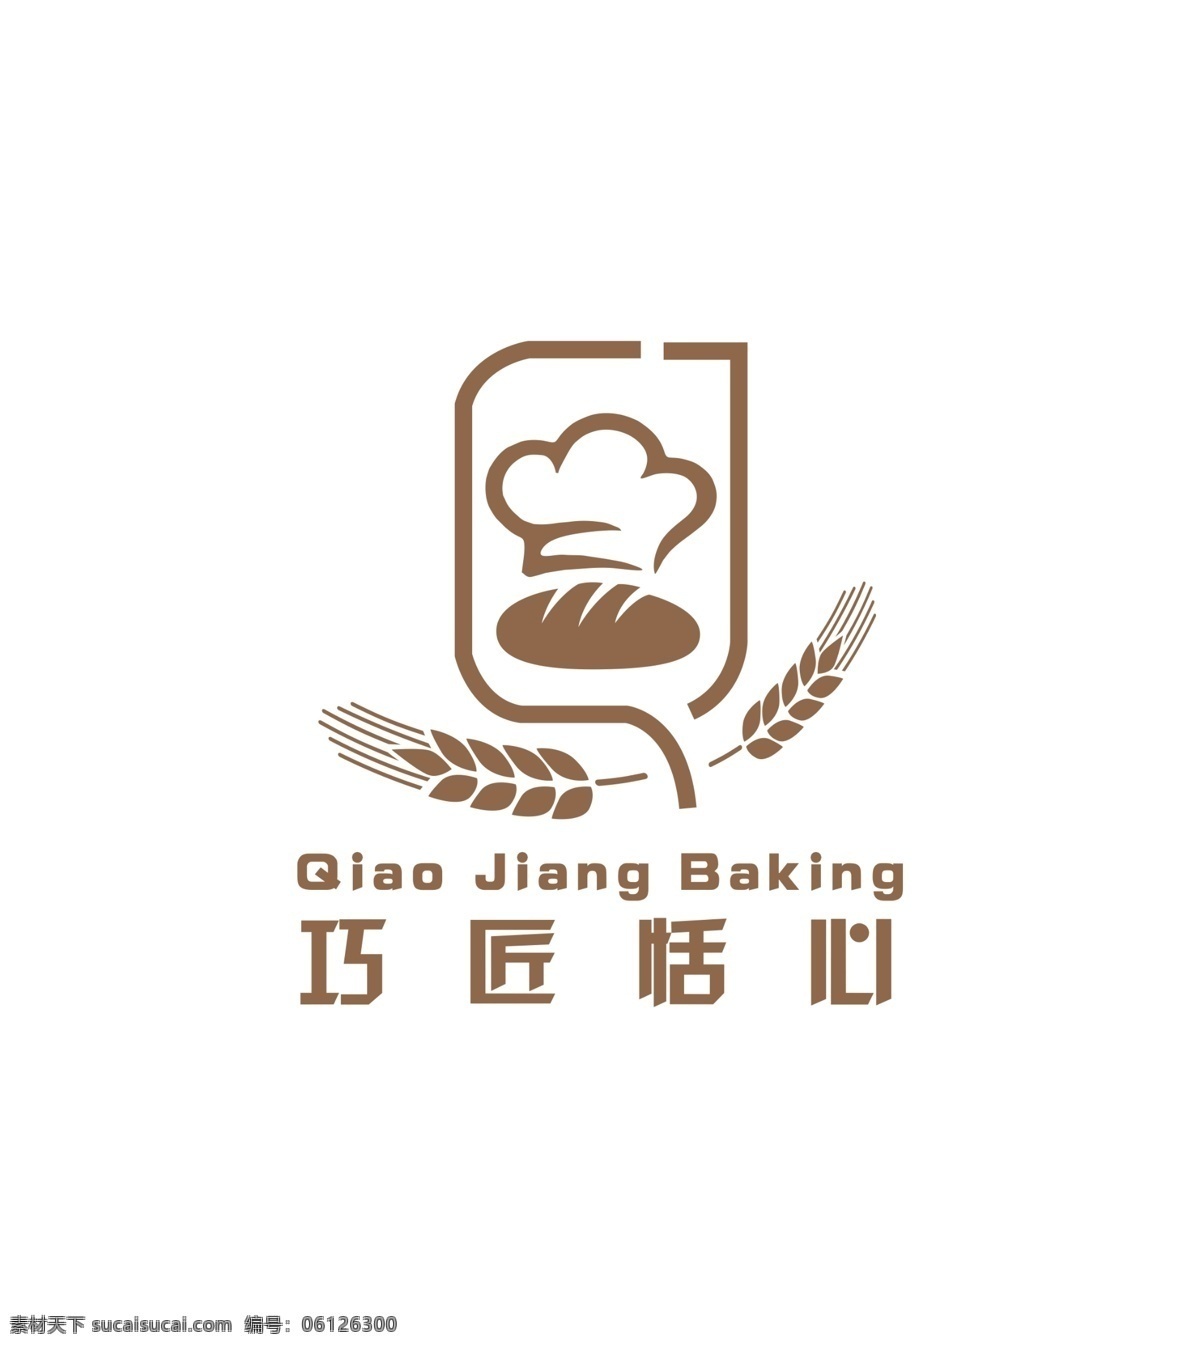 巧匠 恬 心 logo 恬心logo 标志 面包 烘焙 蛋糕店 logo设计